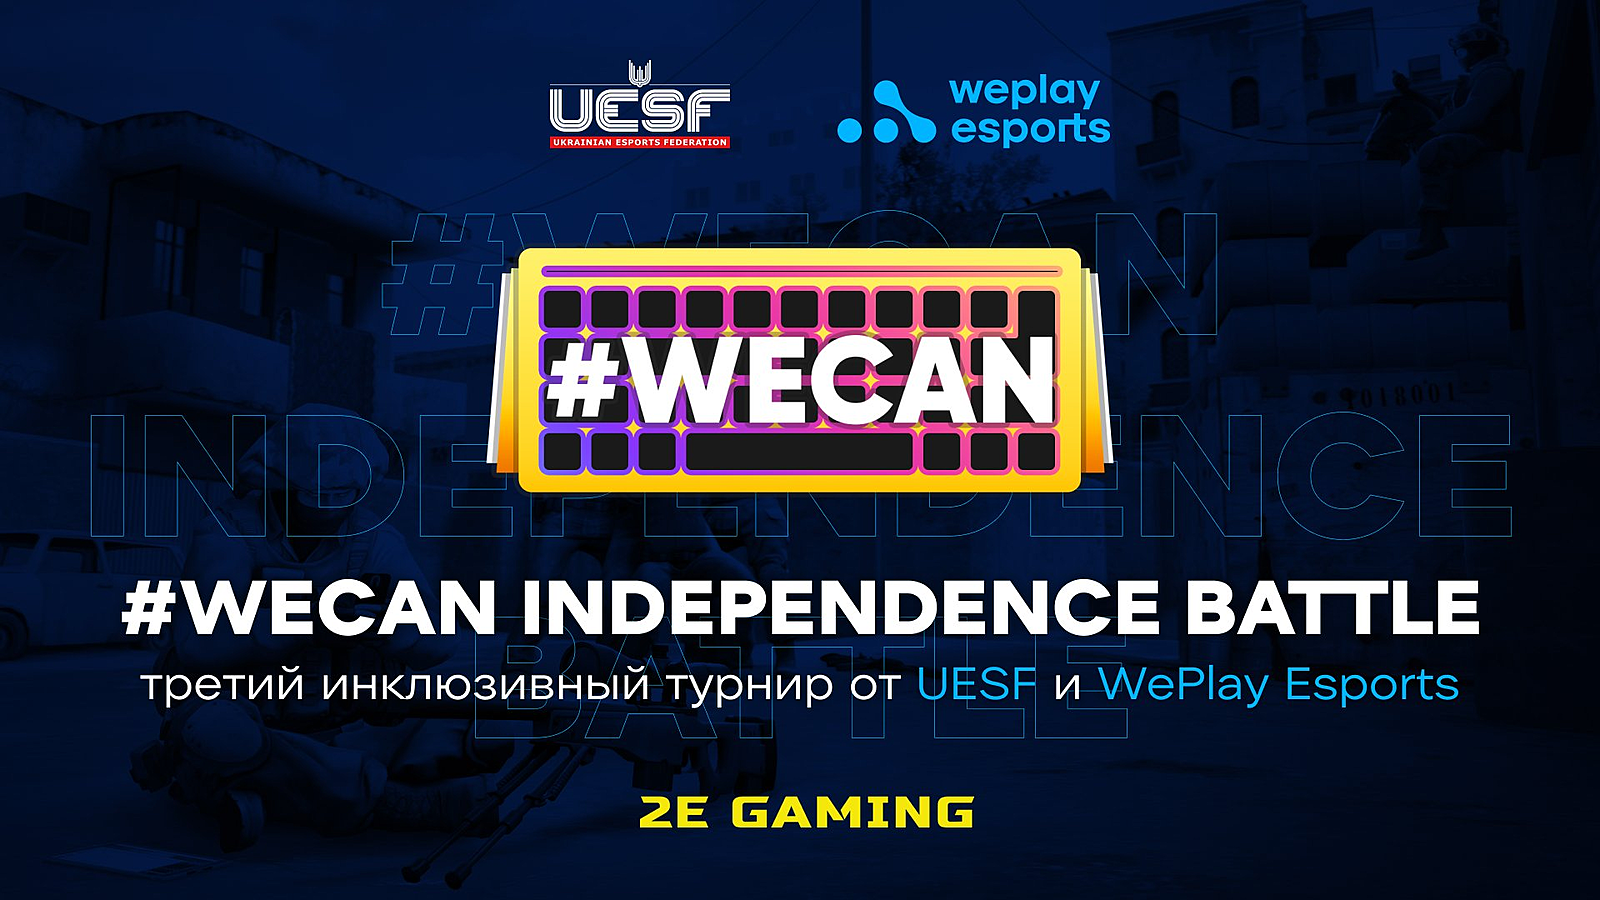 Федерация киберспорта Украины и WePlay Esports проведут турнир по CS:GO для людей с инвалидностью